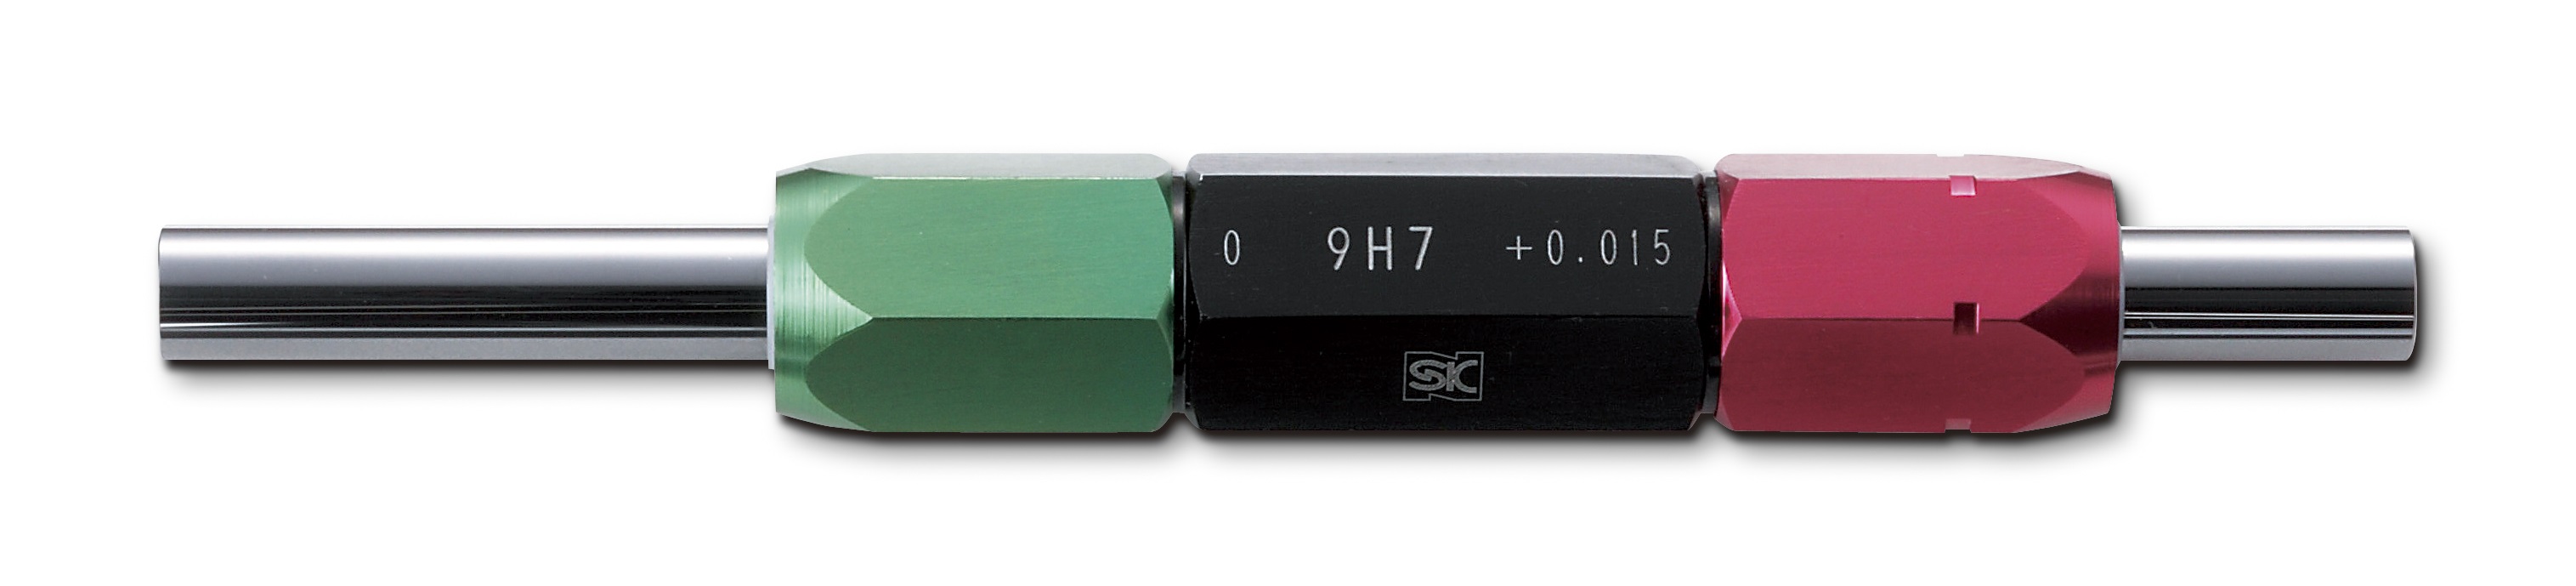 から厳選した □SK セラミックステップ限界栓ゲージ H7 φ19 SPCLP19